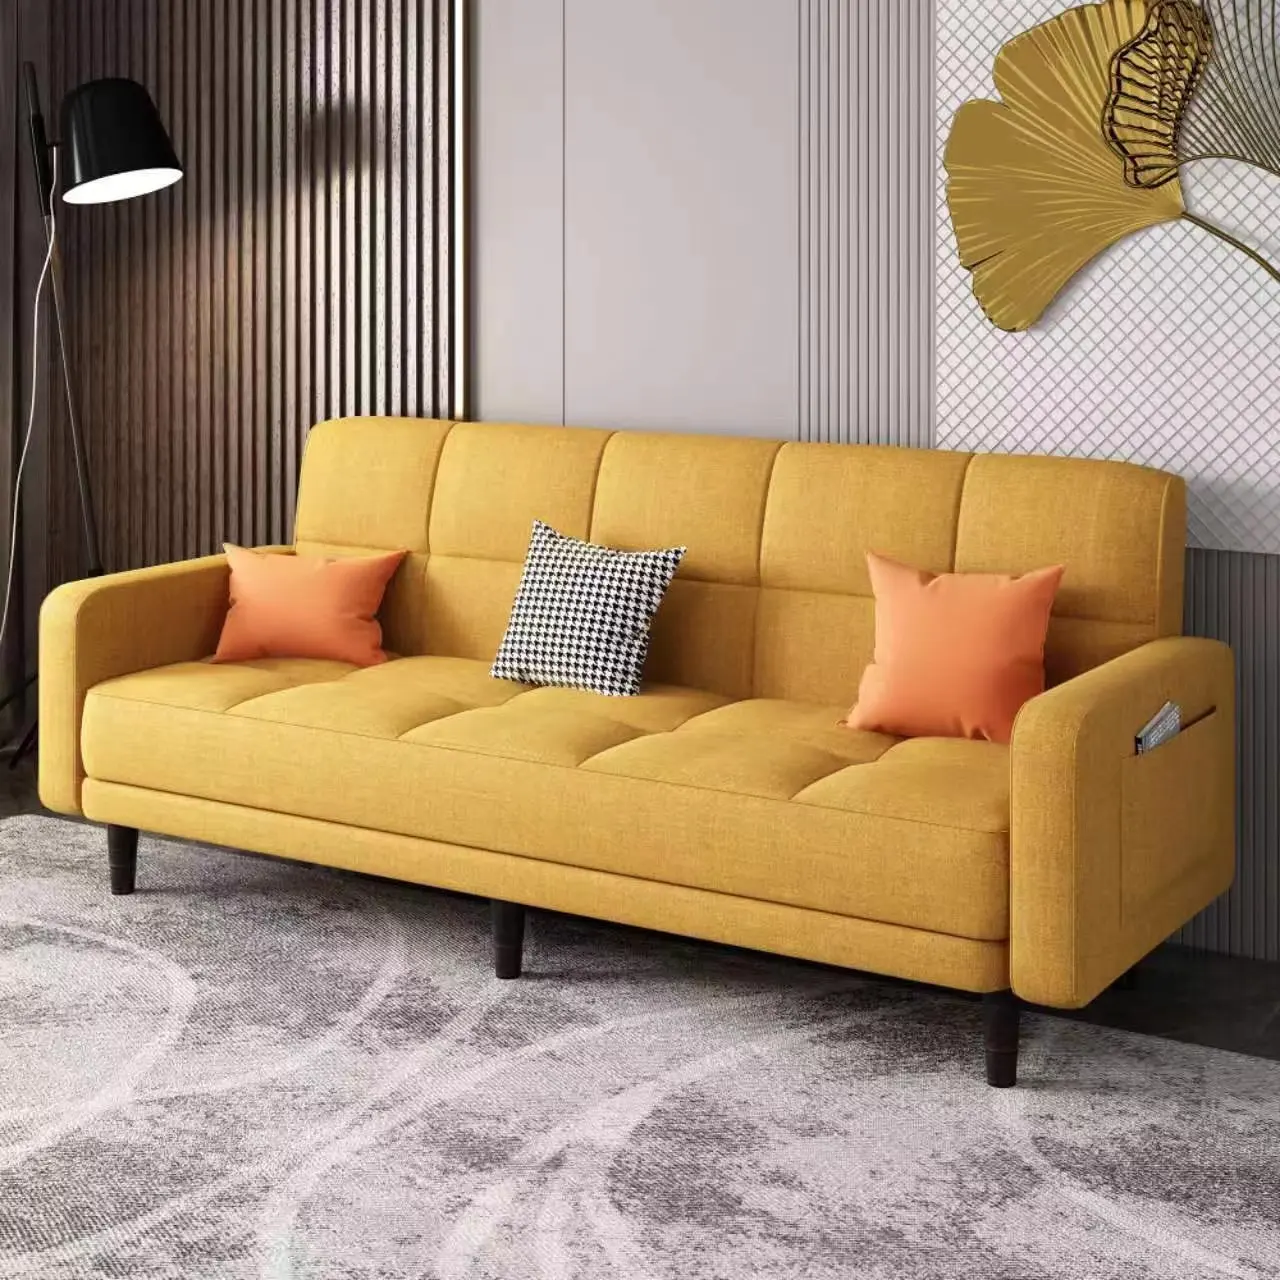 Conjuntos de sala de estar com sofás longos, tecido sofisticado, sofá longo, móveis para casa, preço baixo e moderno